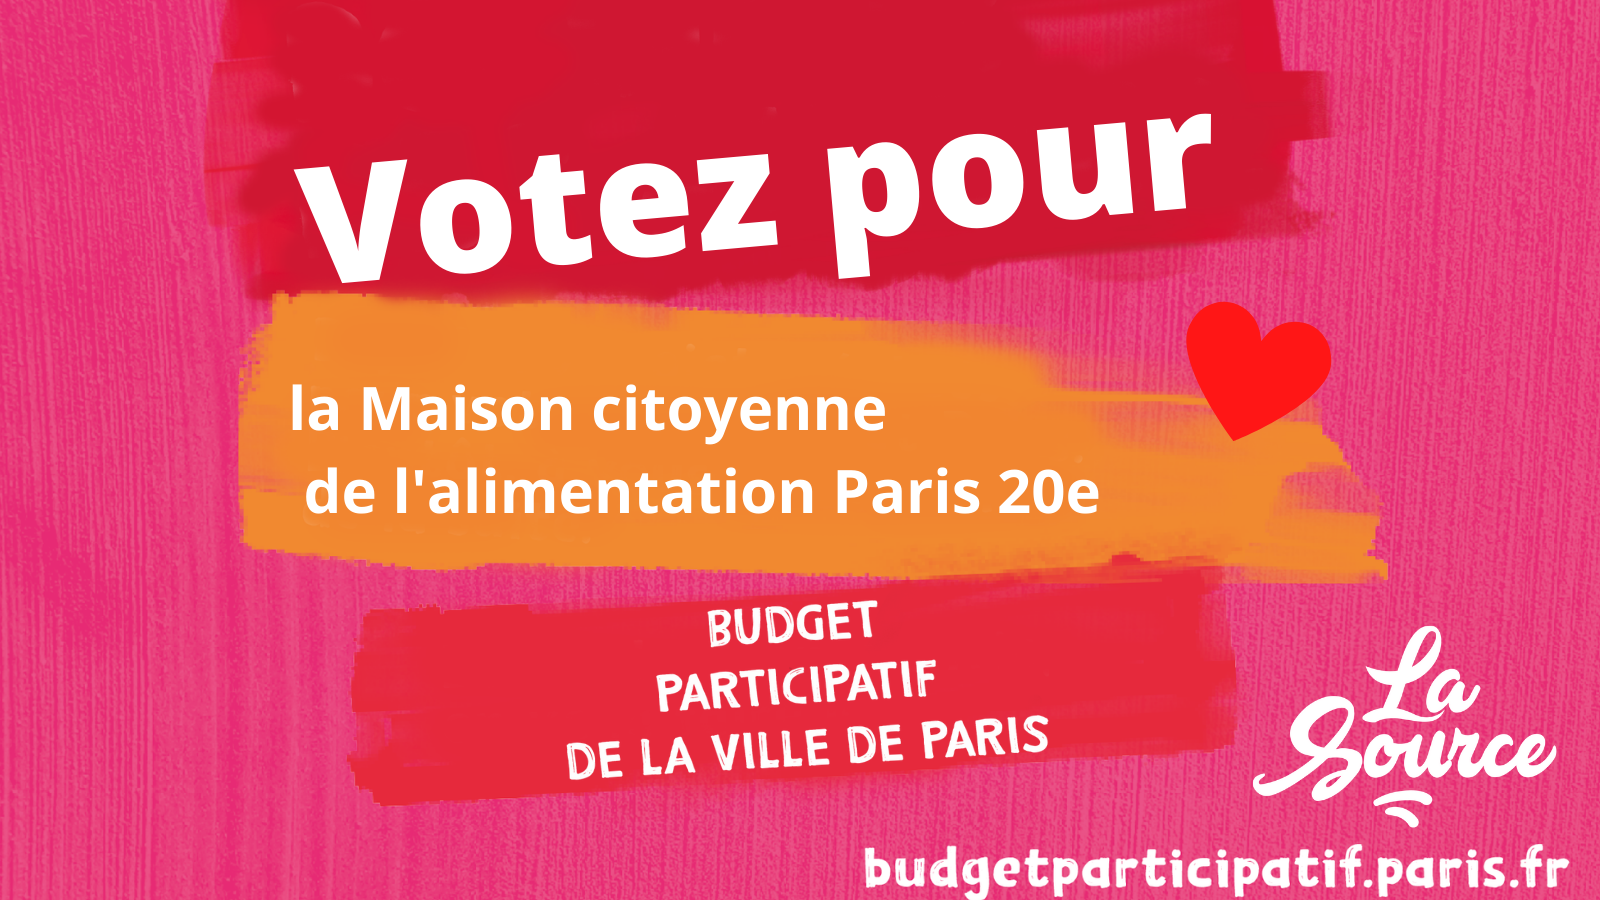 Votez pour La Source au budget participatif de Paris